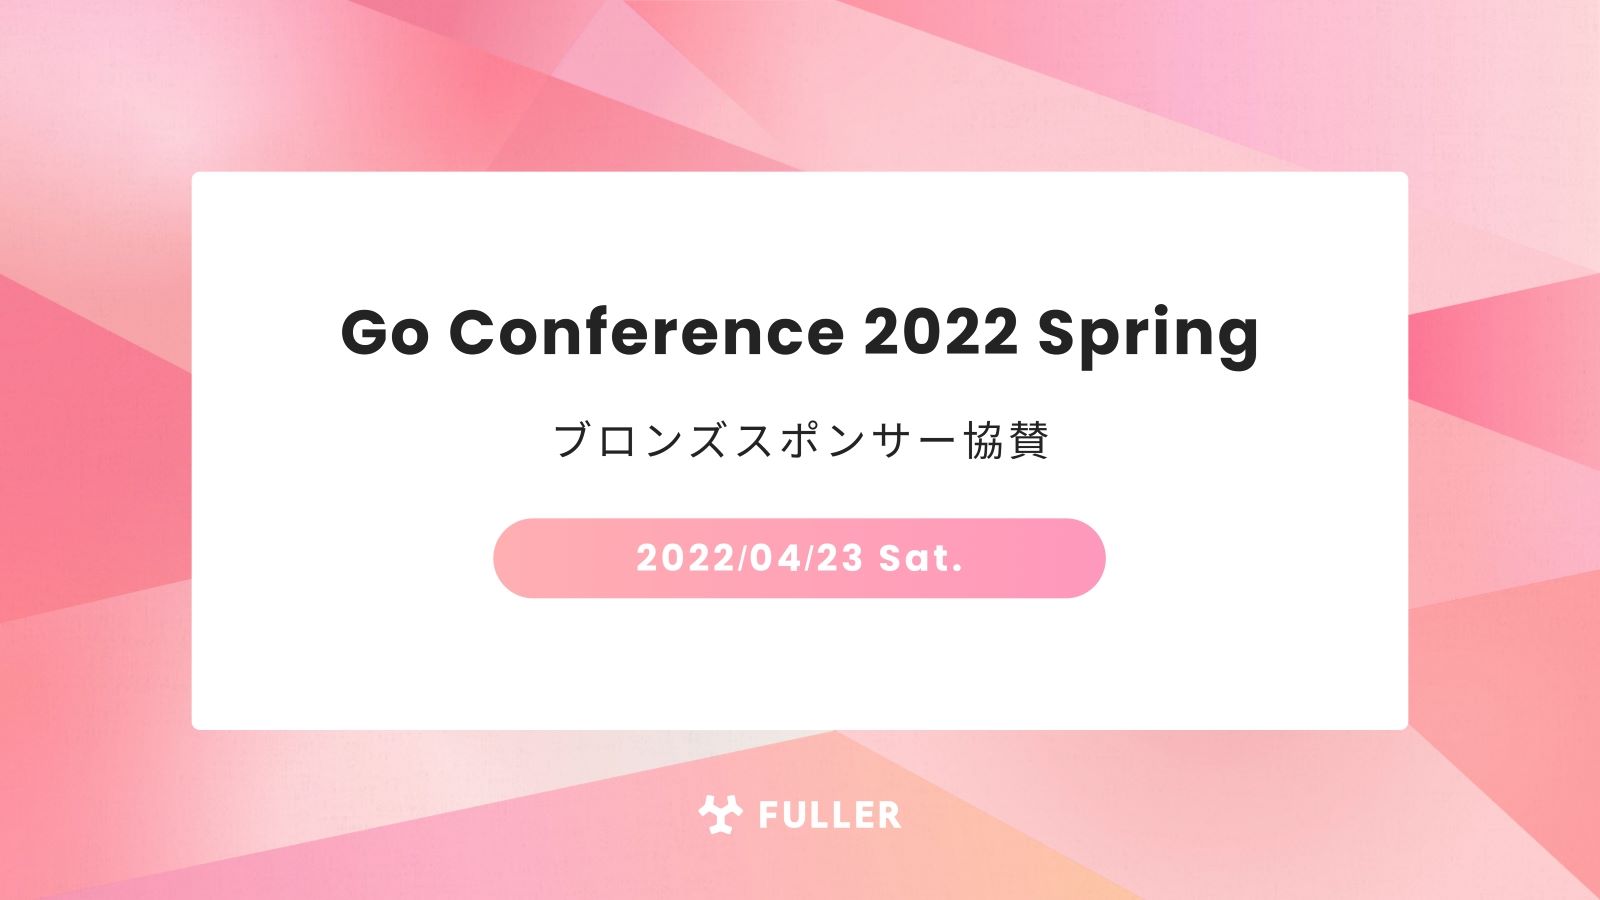 フラー、Go Conference Online 2022 Springにブロンズスポンサー協賛